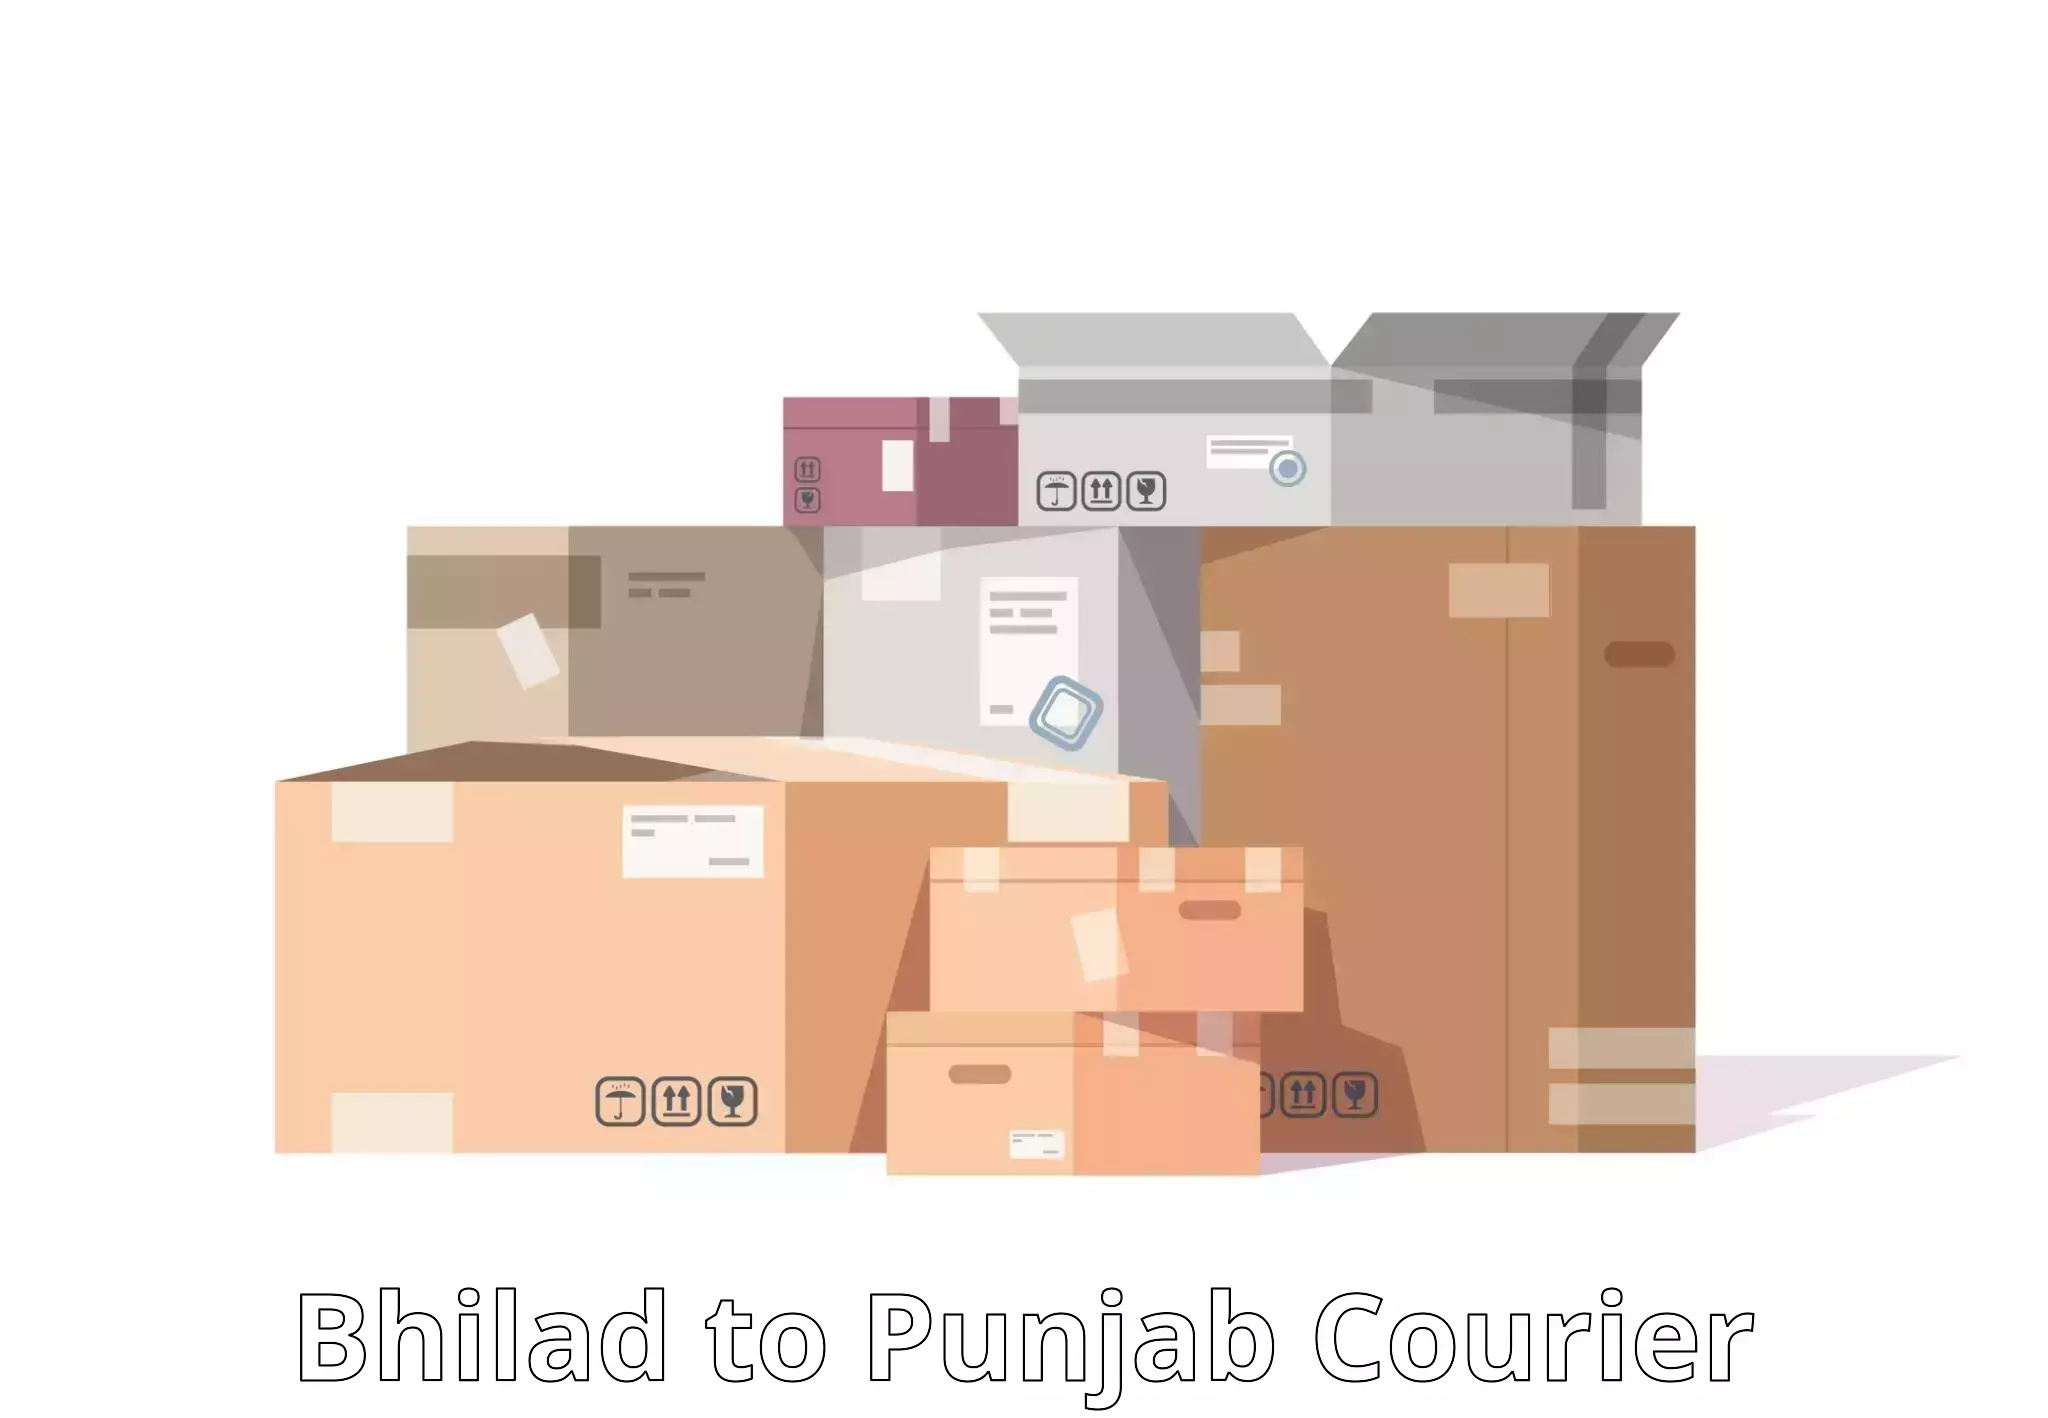 Parcel delivery automation Bhilad to Jalandhar